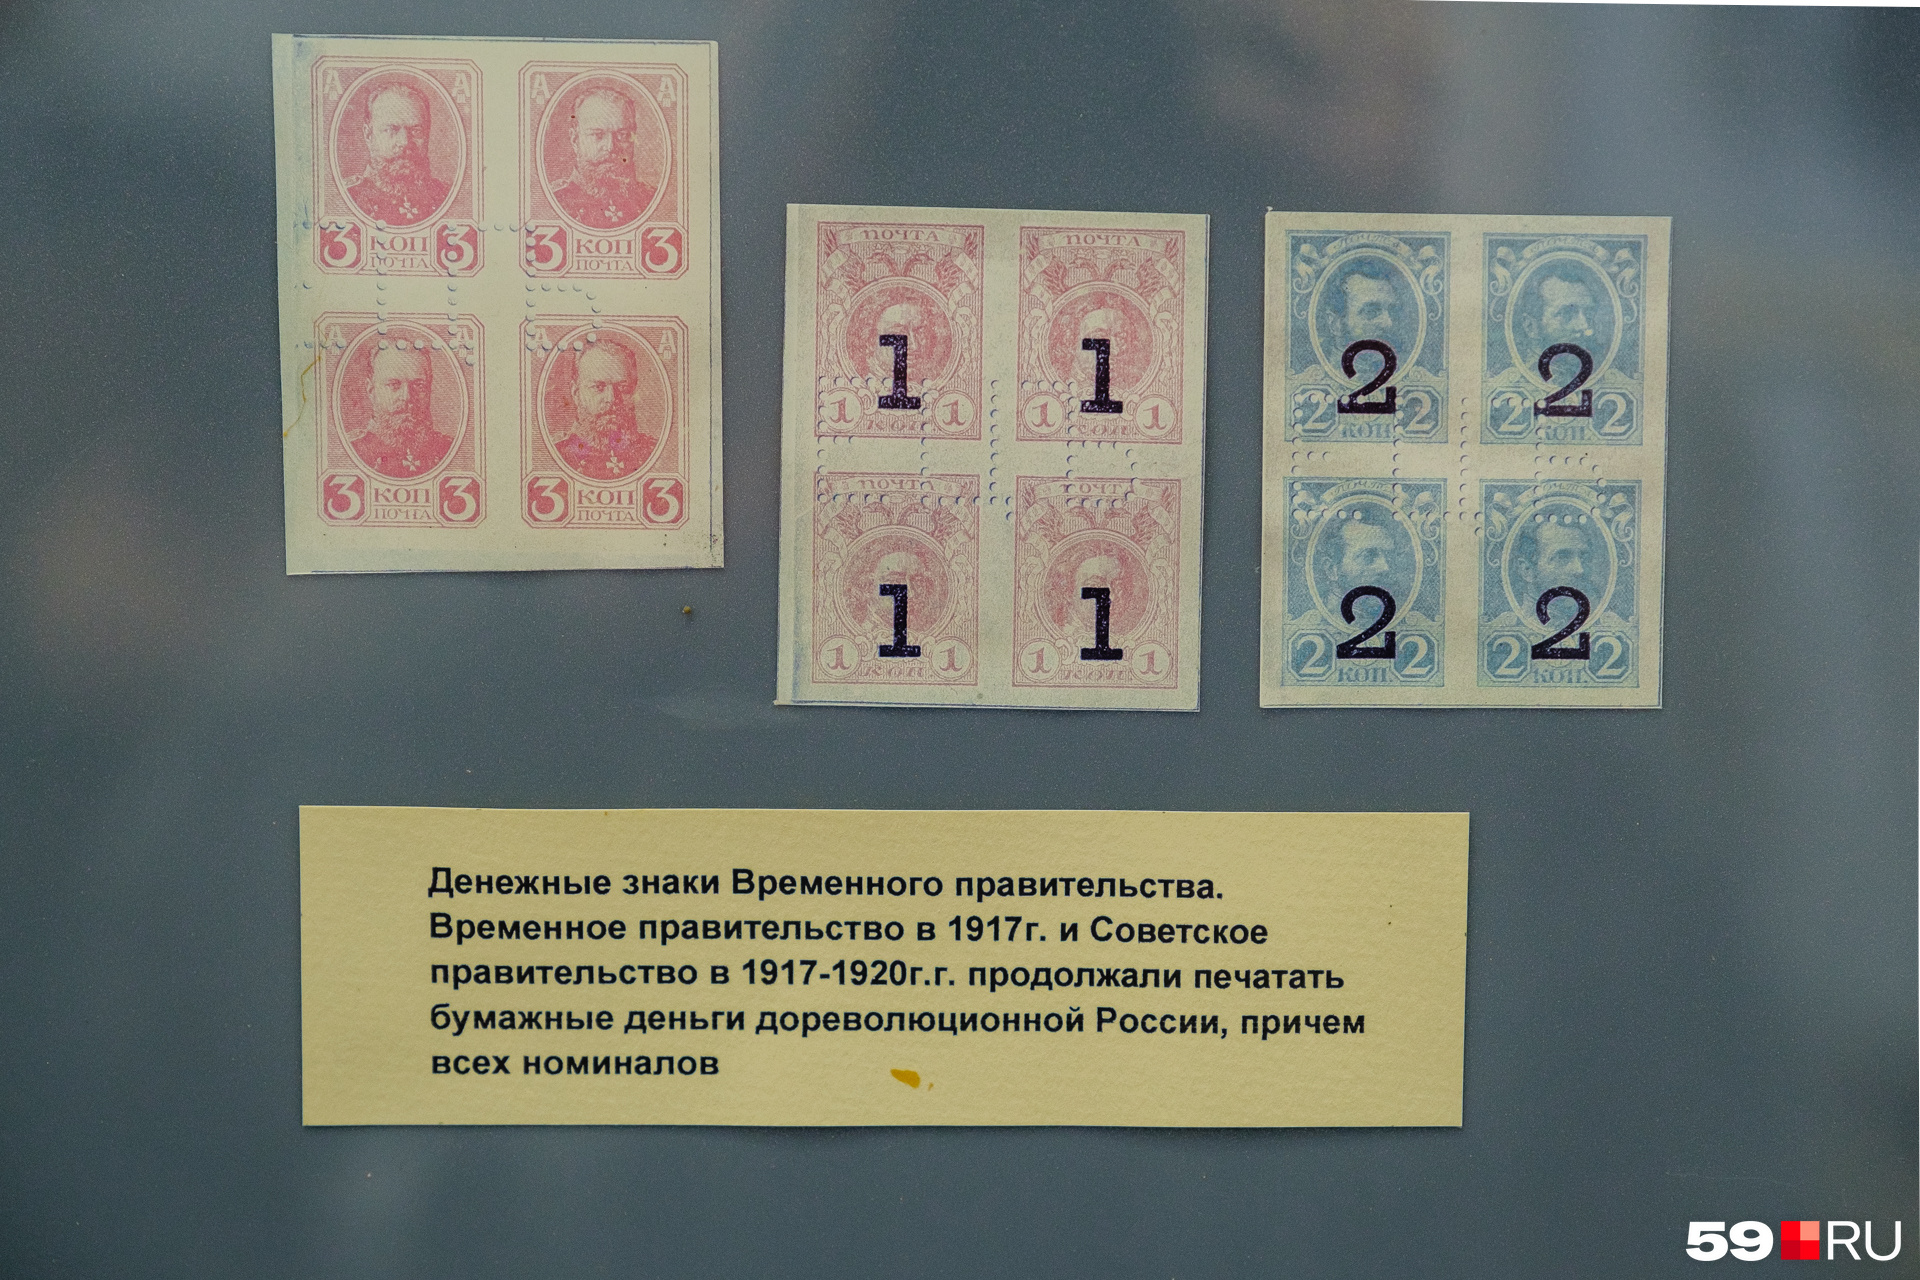 Деньги-марки почти не отличались от обычных марок